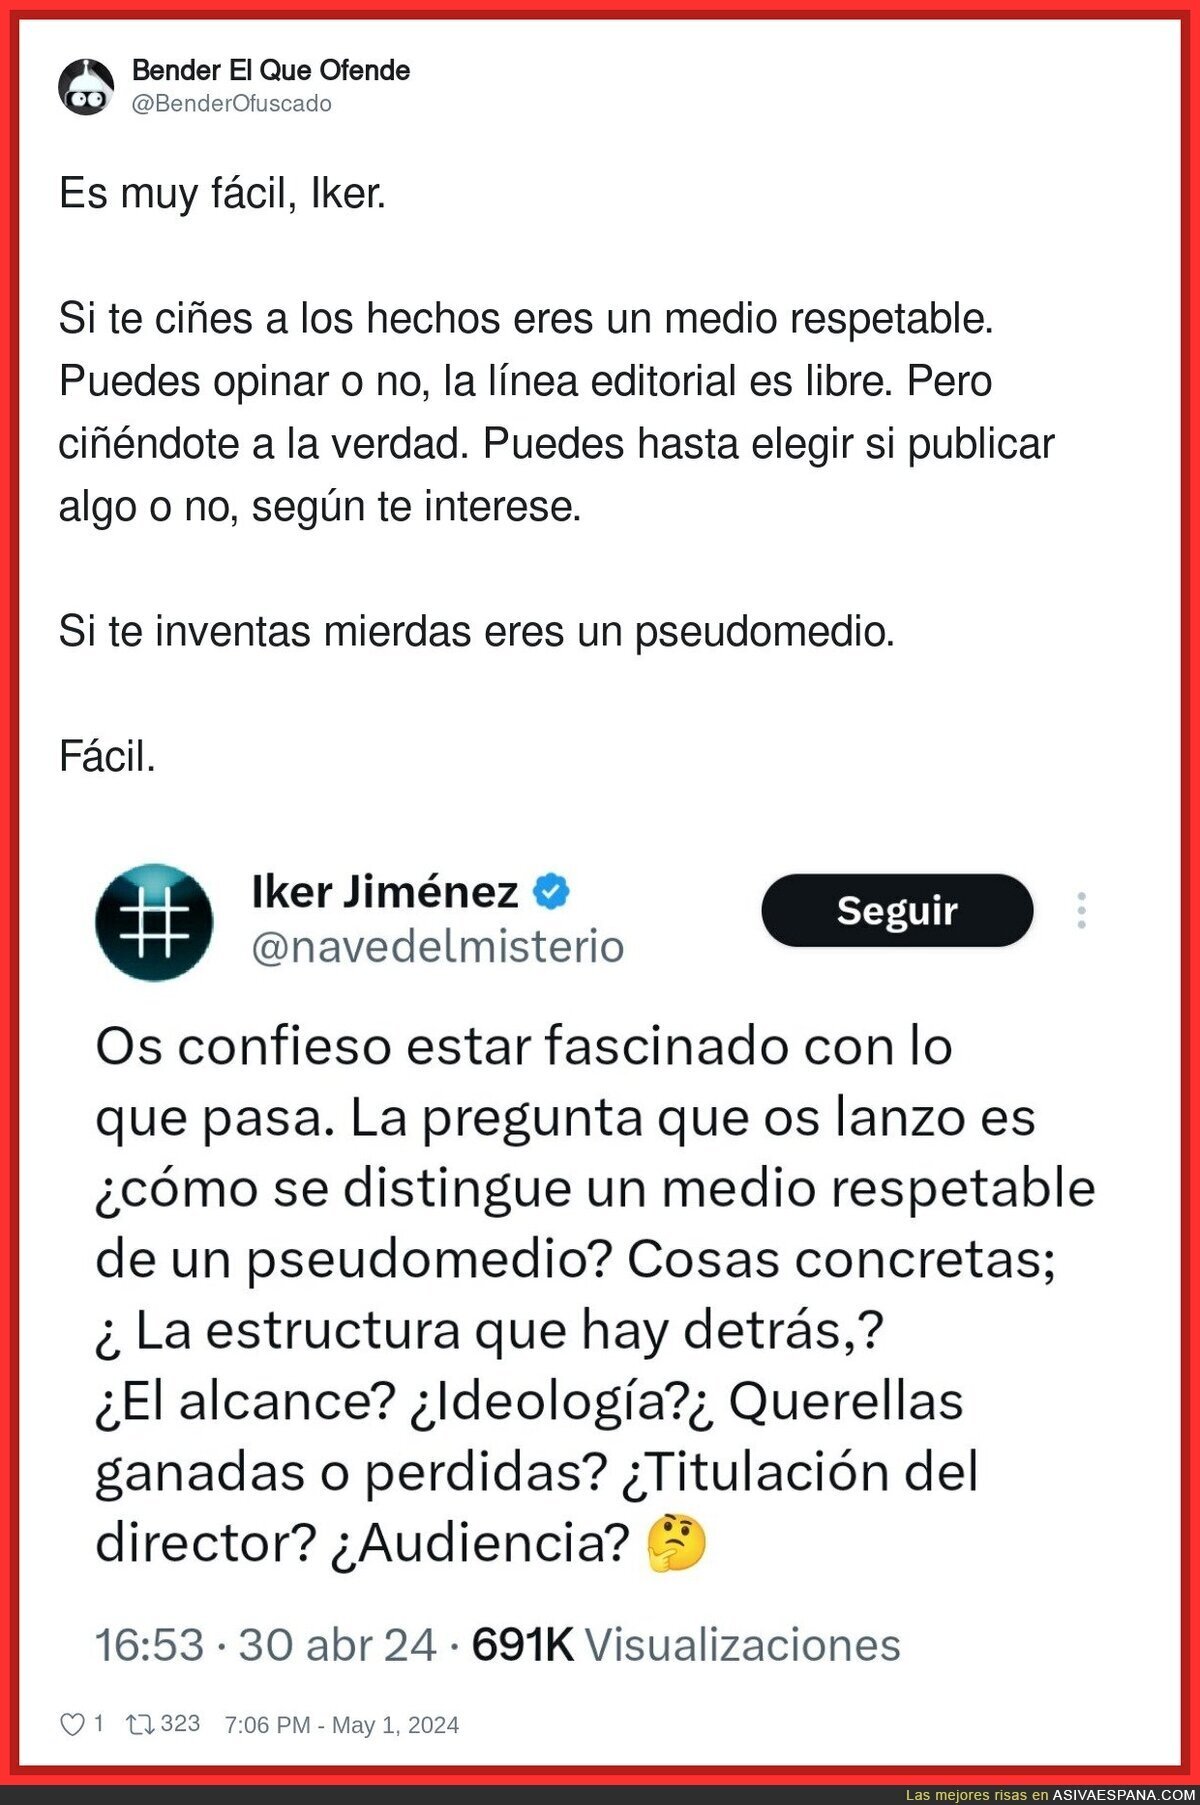 Las dudas de Iker Jiménez